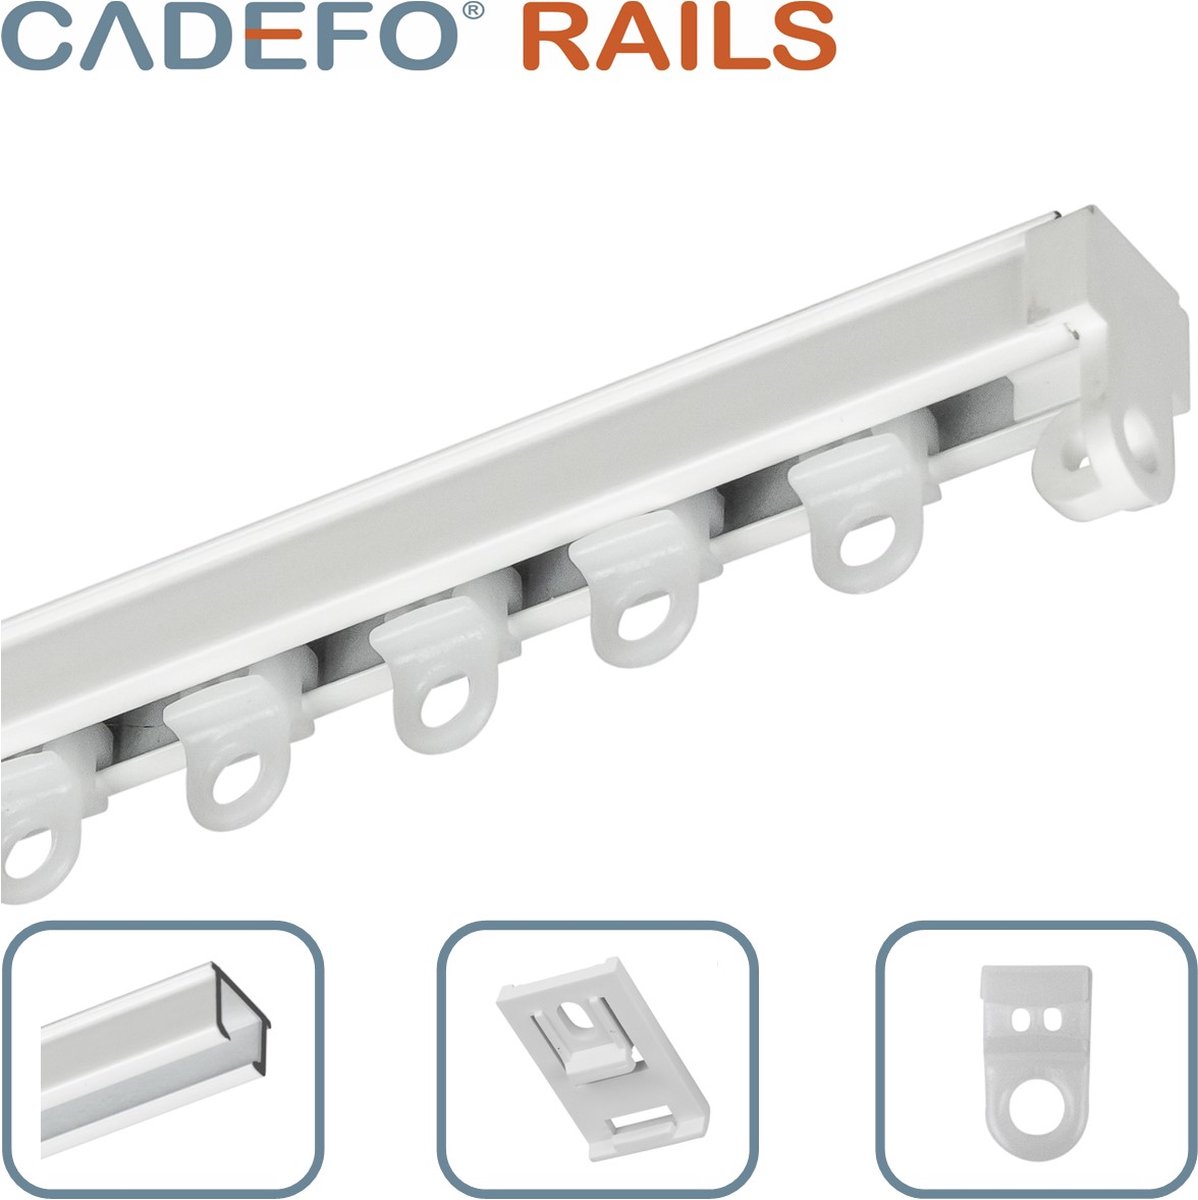 CADEFO RAILS (351 - 400 cm) Gordijnrails - Compleet op maat! - UIT 1 STUK - Leverbaar tot 6 meter - Plafondbevestiging - Lengte 375 cm